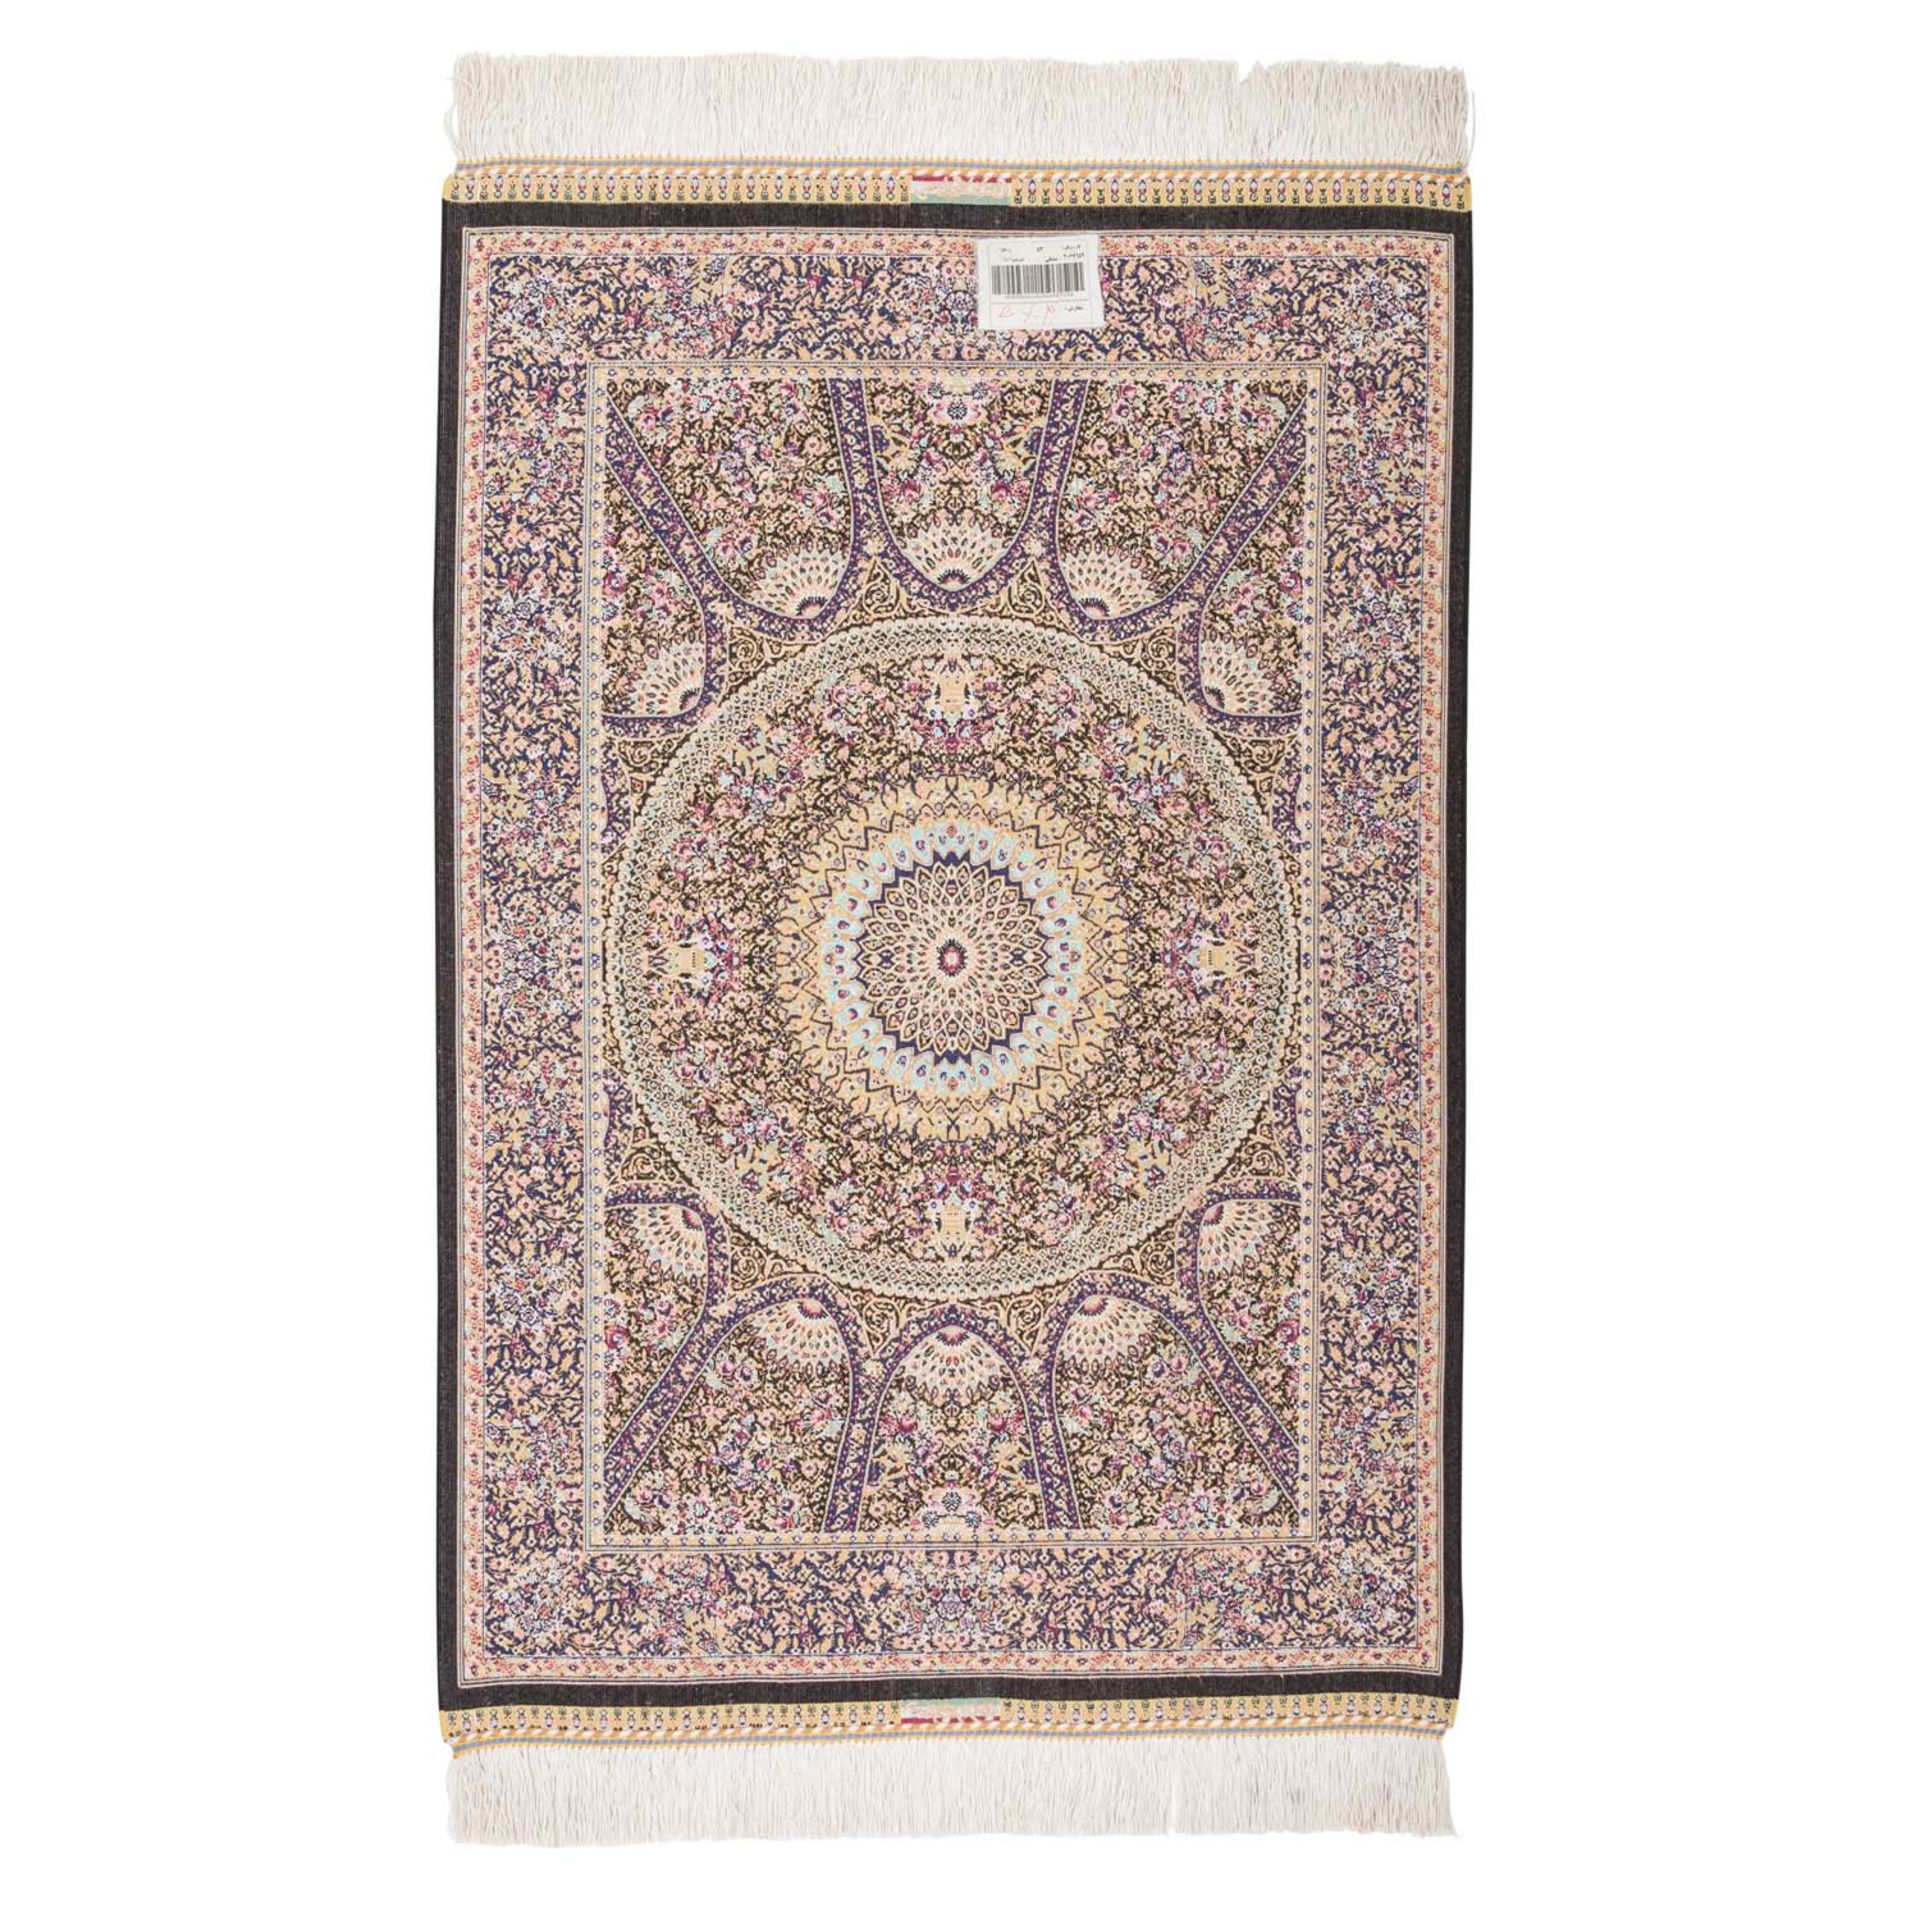 Feiner Orientteppich aus Seide. IRAN, 20. Jh., 91x60 cm. - Image 2 of 3